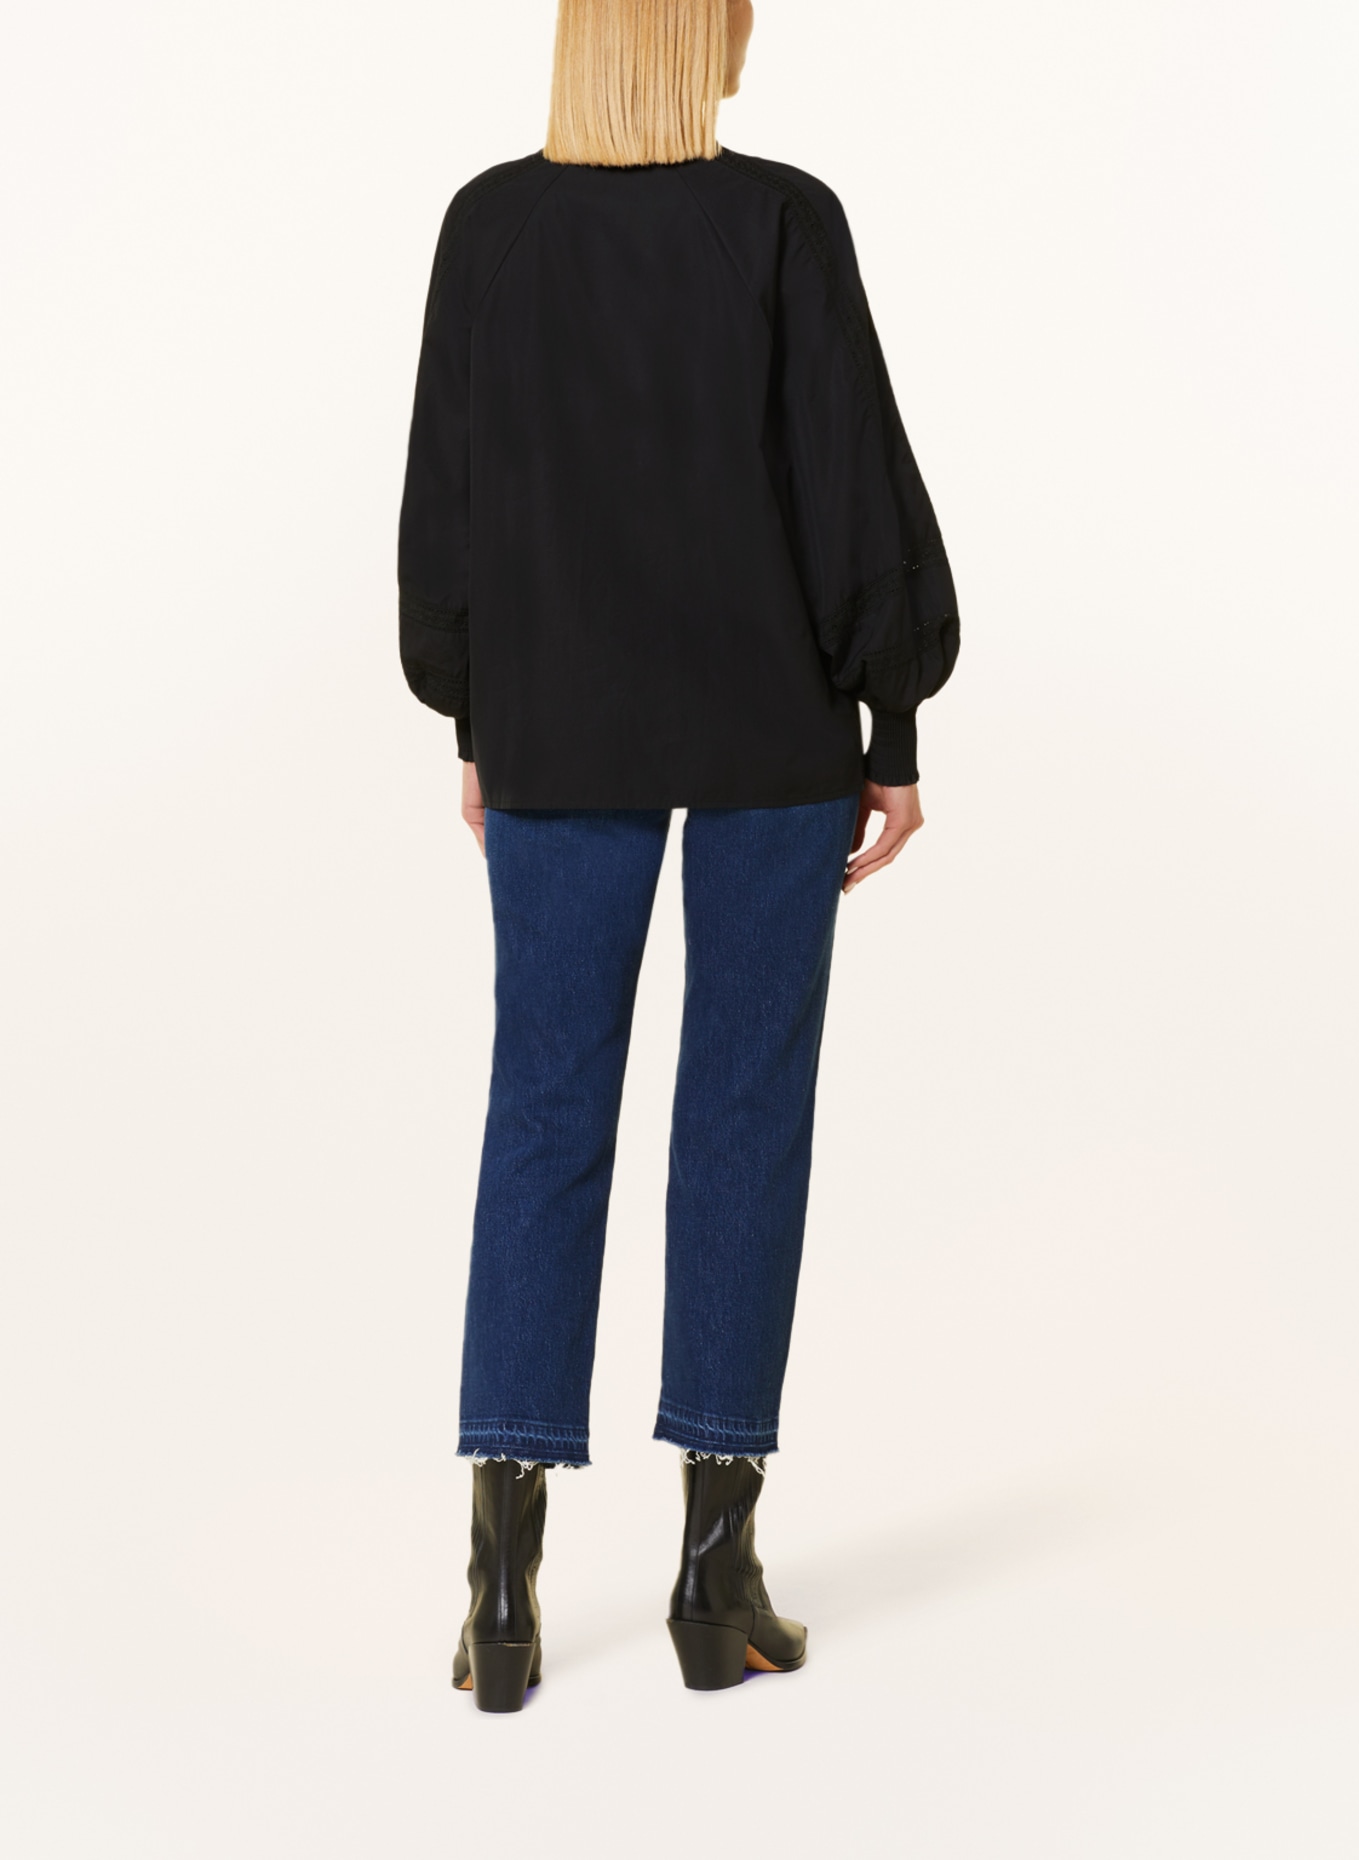 TONNO & PANNA Shirt blouse ALEXIS with lace, Color: BLACK (Image 3)